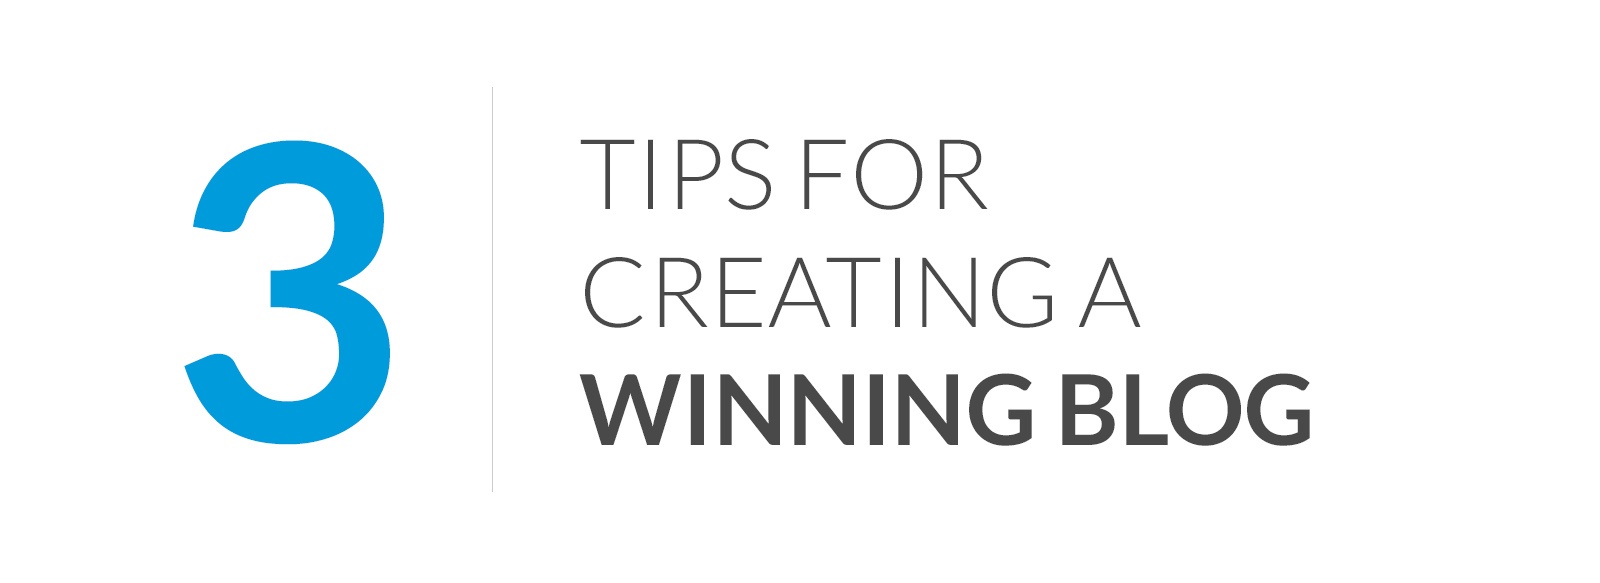 3-tips-for-a-winning-blog.jpg